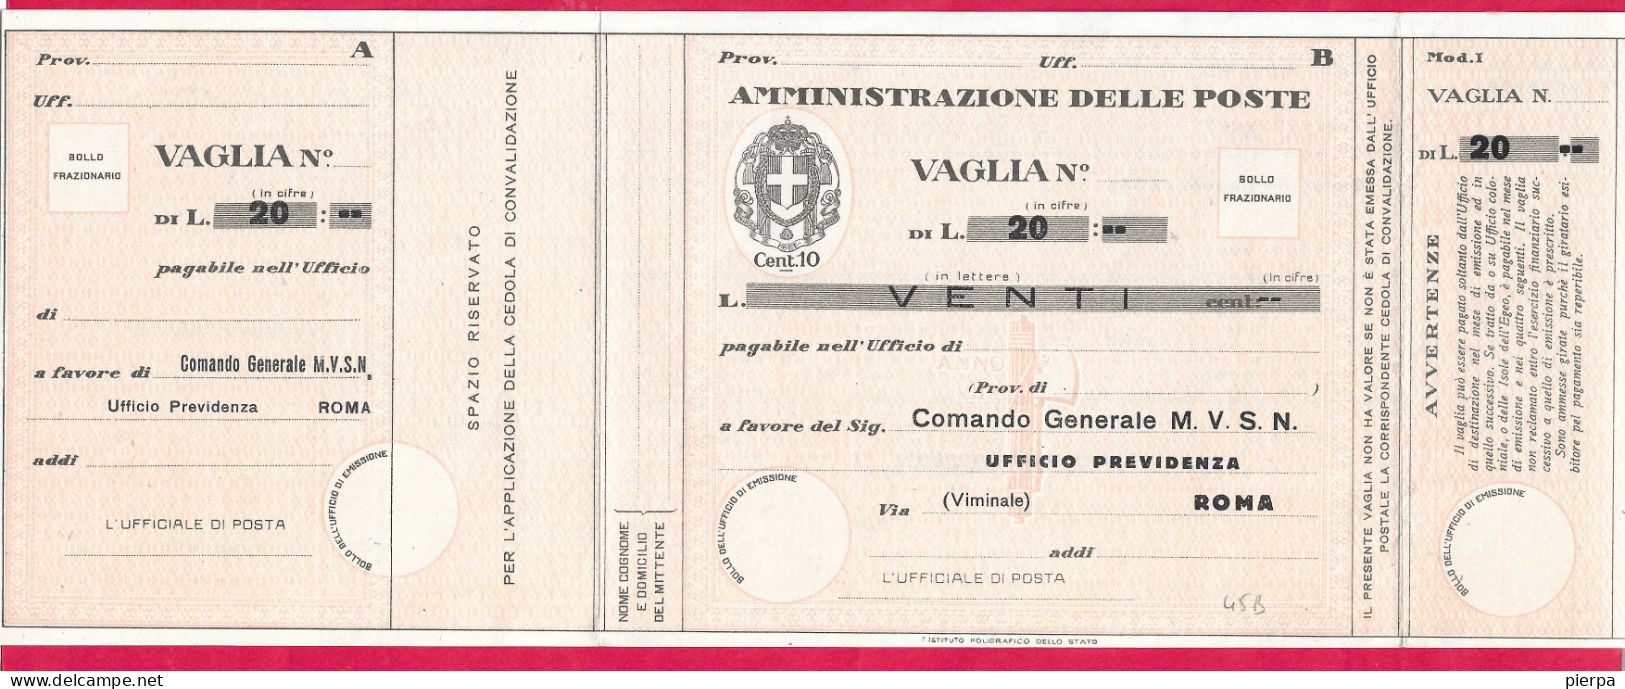 MODULO VAGLIA POSTALE C.10 (CAT. INT. 45/B) PRECOMPILATO M.V.S.N. LIRE 20 - NON VIAGGIATO - Tax On Money Orders